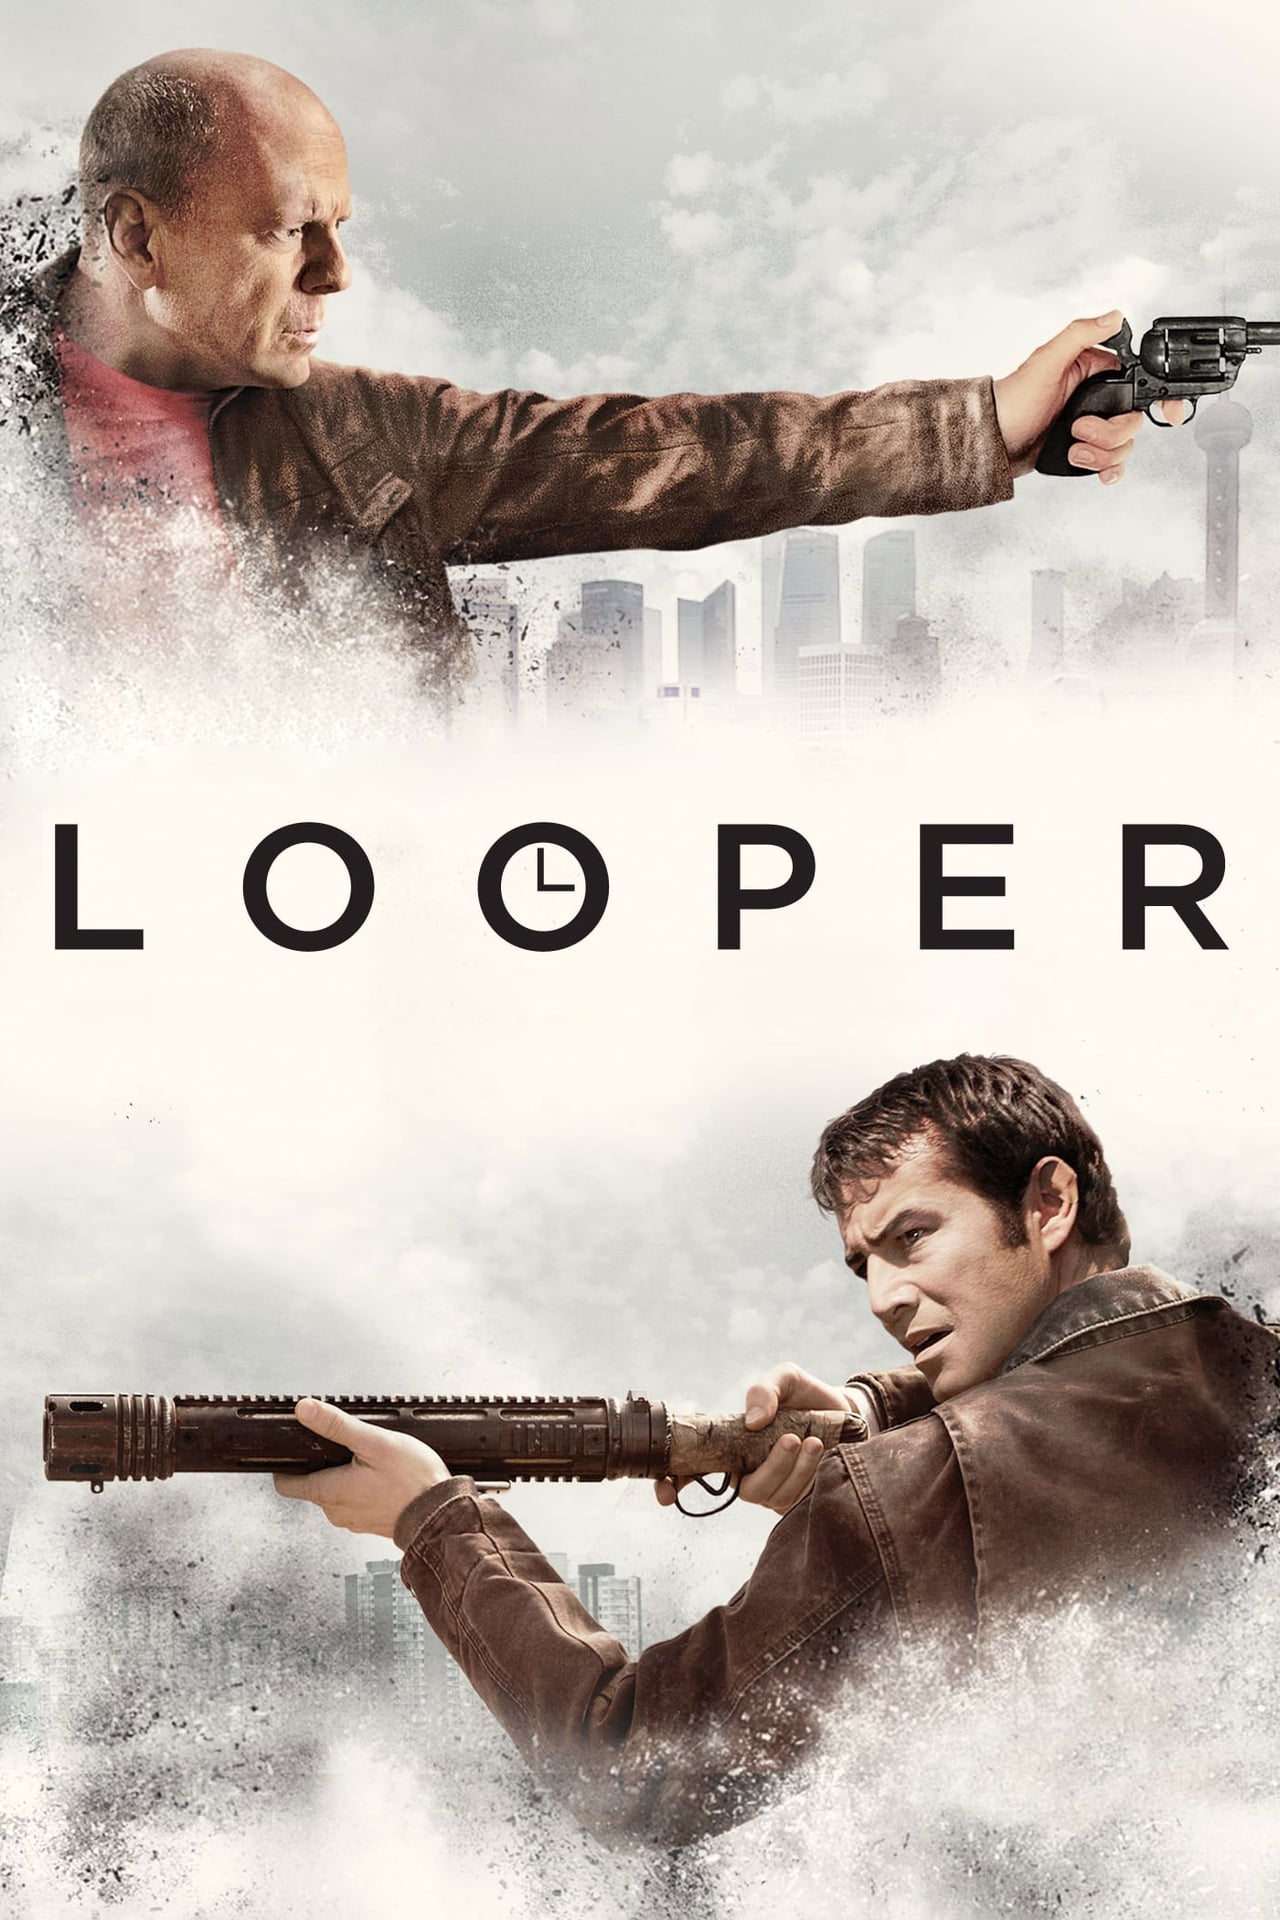 Looper (2012) 1624Kbps 24Fps 48Khz BluRay DTS-HD MA 2.0Ch Turkish Audio TAC